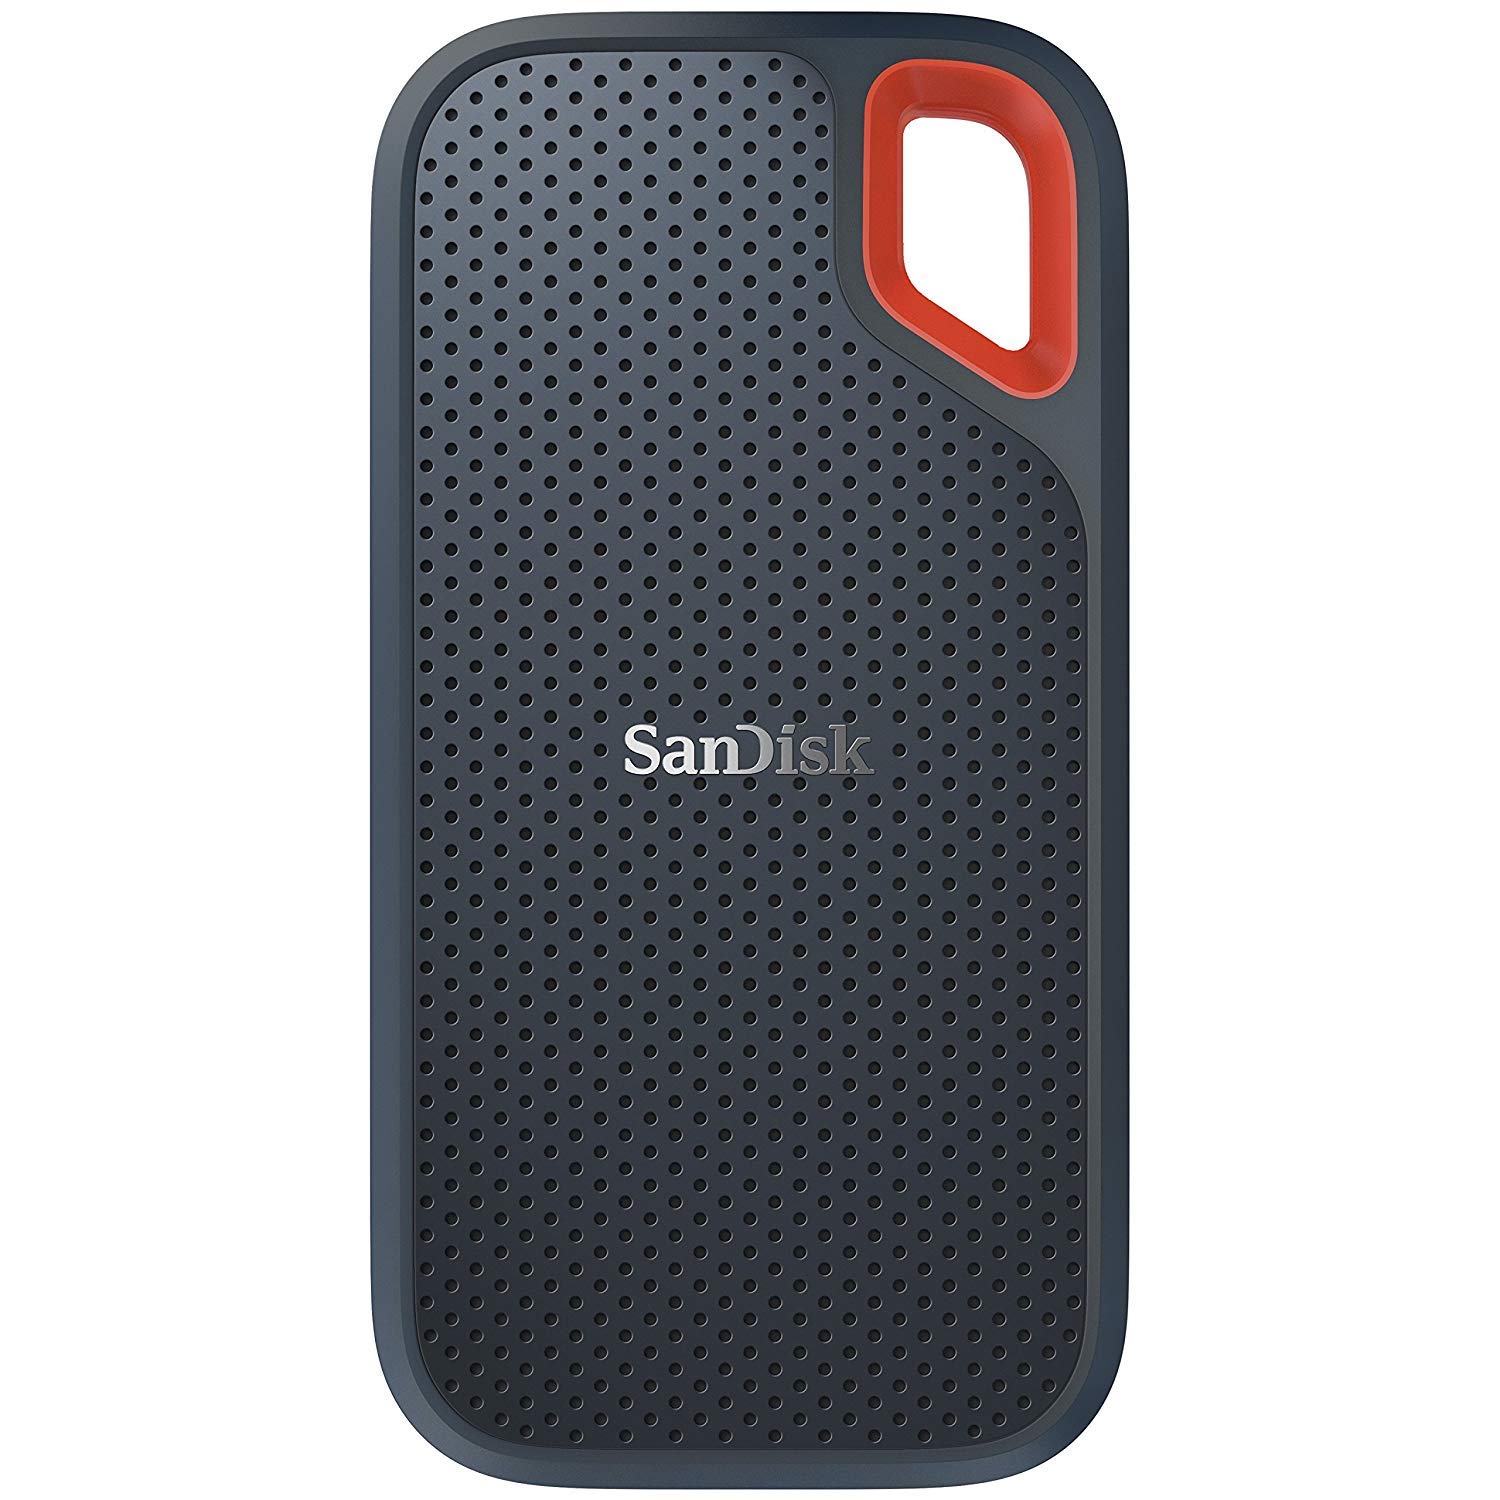 SanDisk SSD externo portátil Extreme de 250 GB